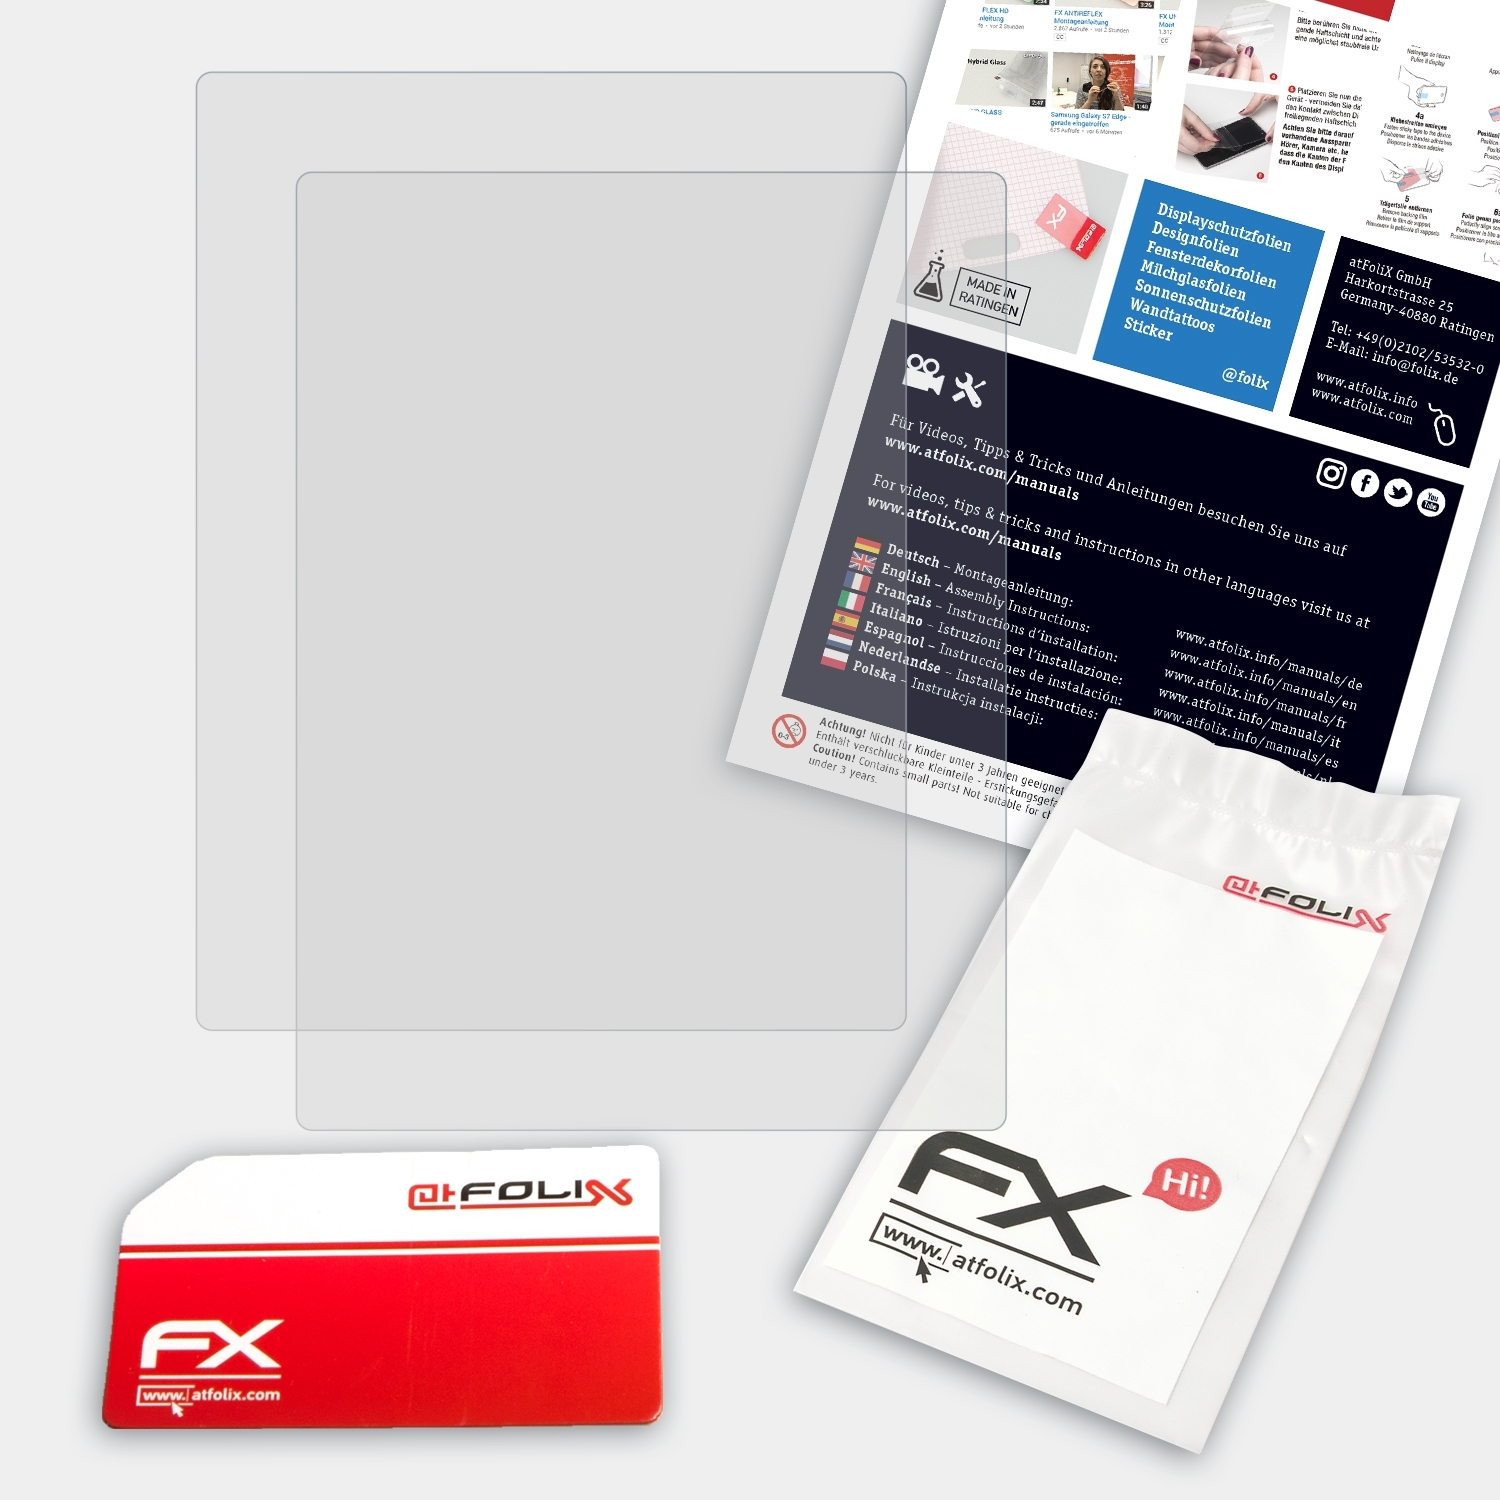 ATFOLIX 2x Touch Displayschutz(für 2.0) Kobo FX-Antireflex